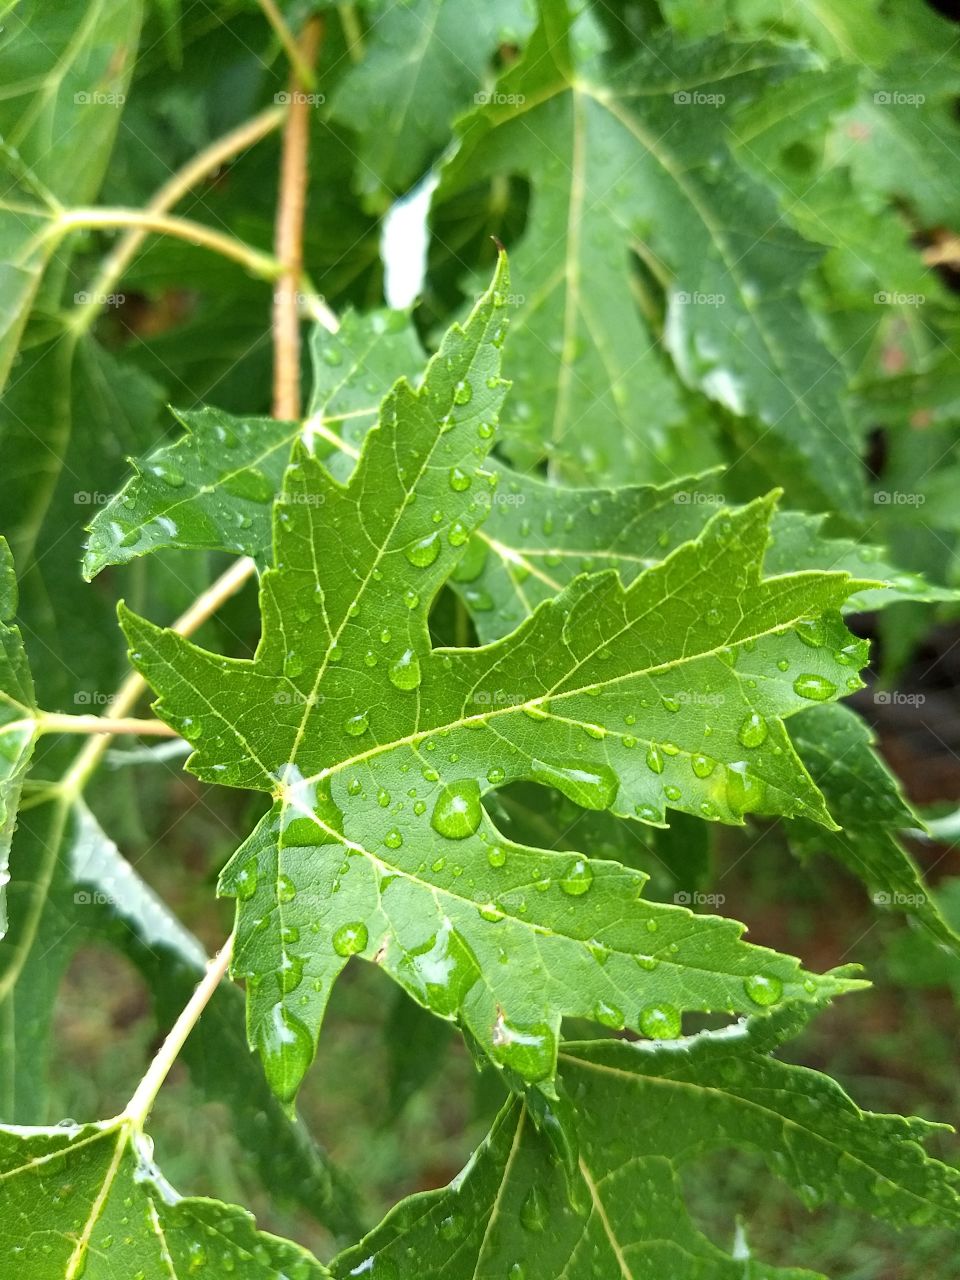 rain on a tree